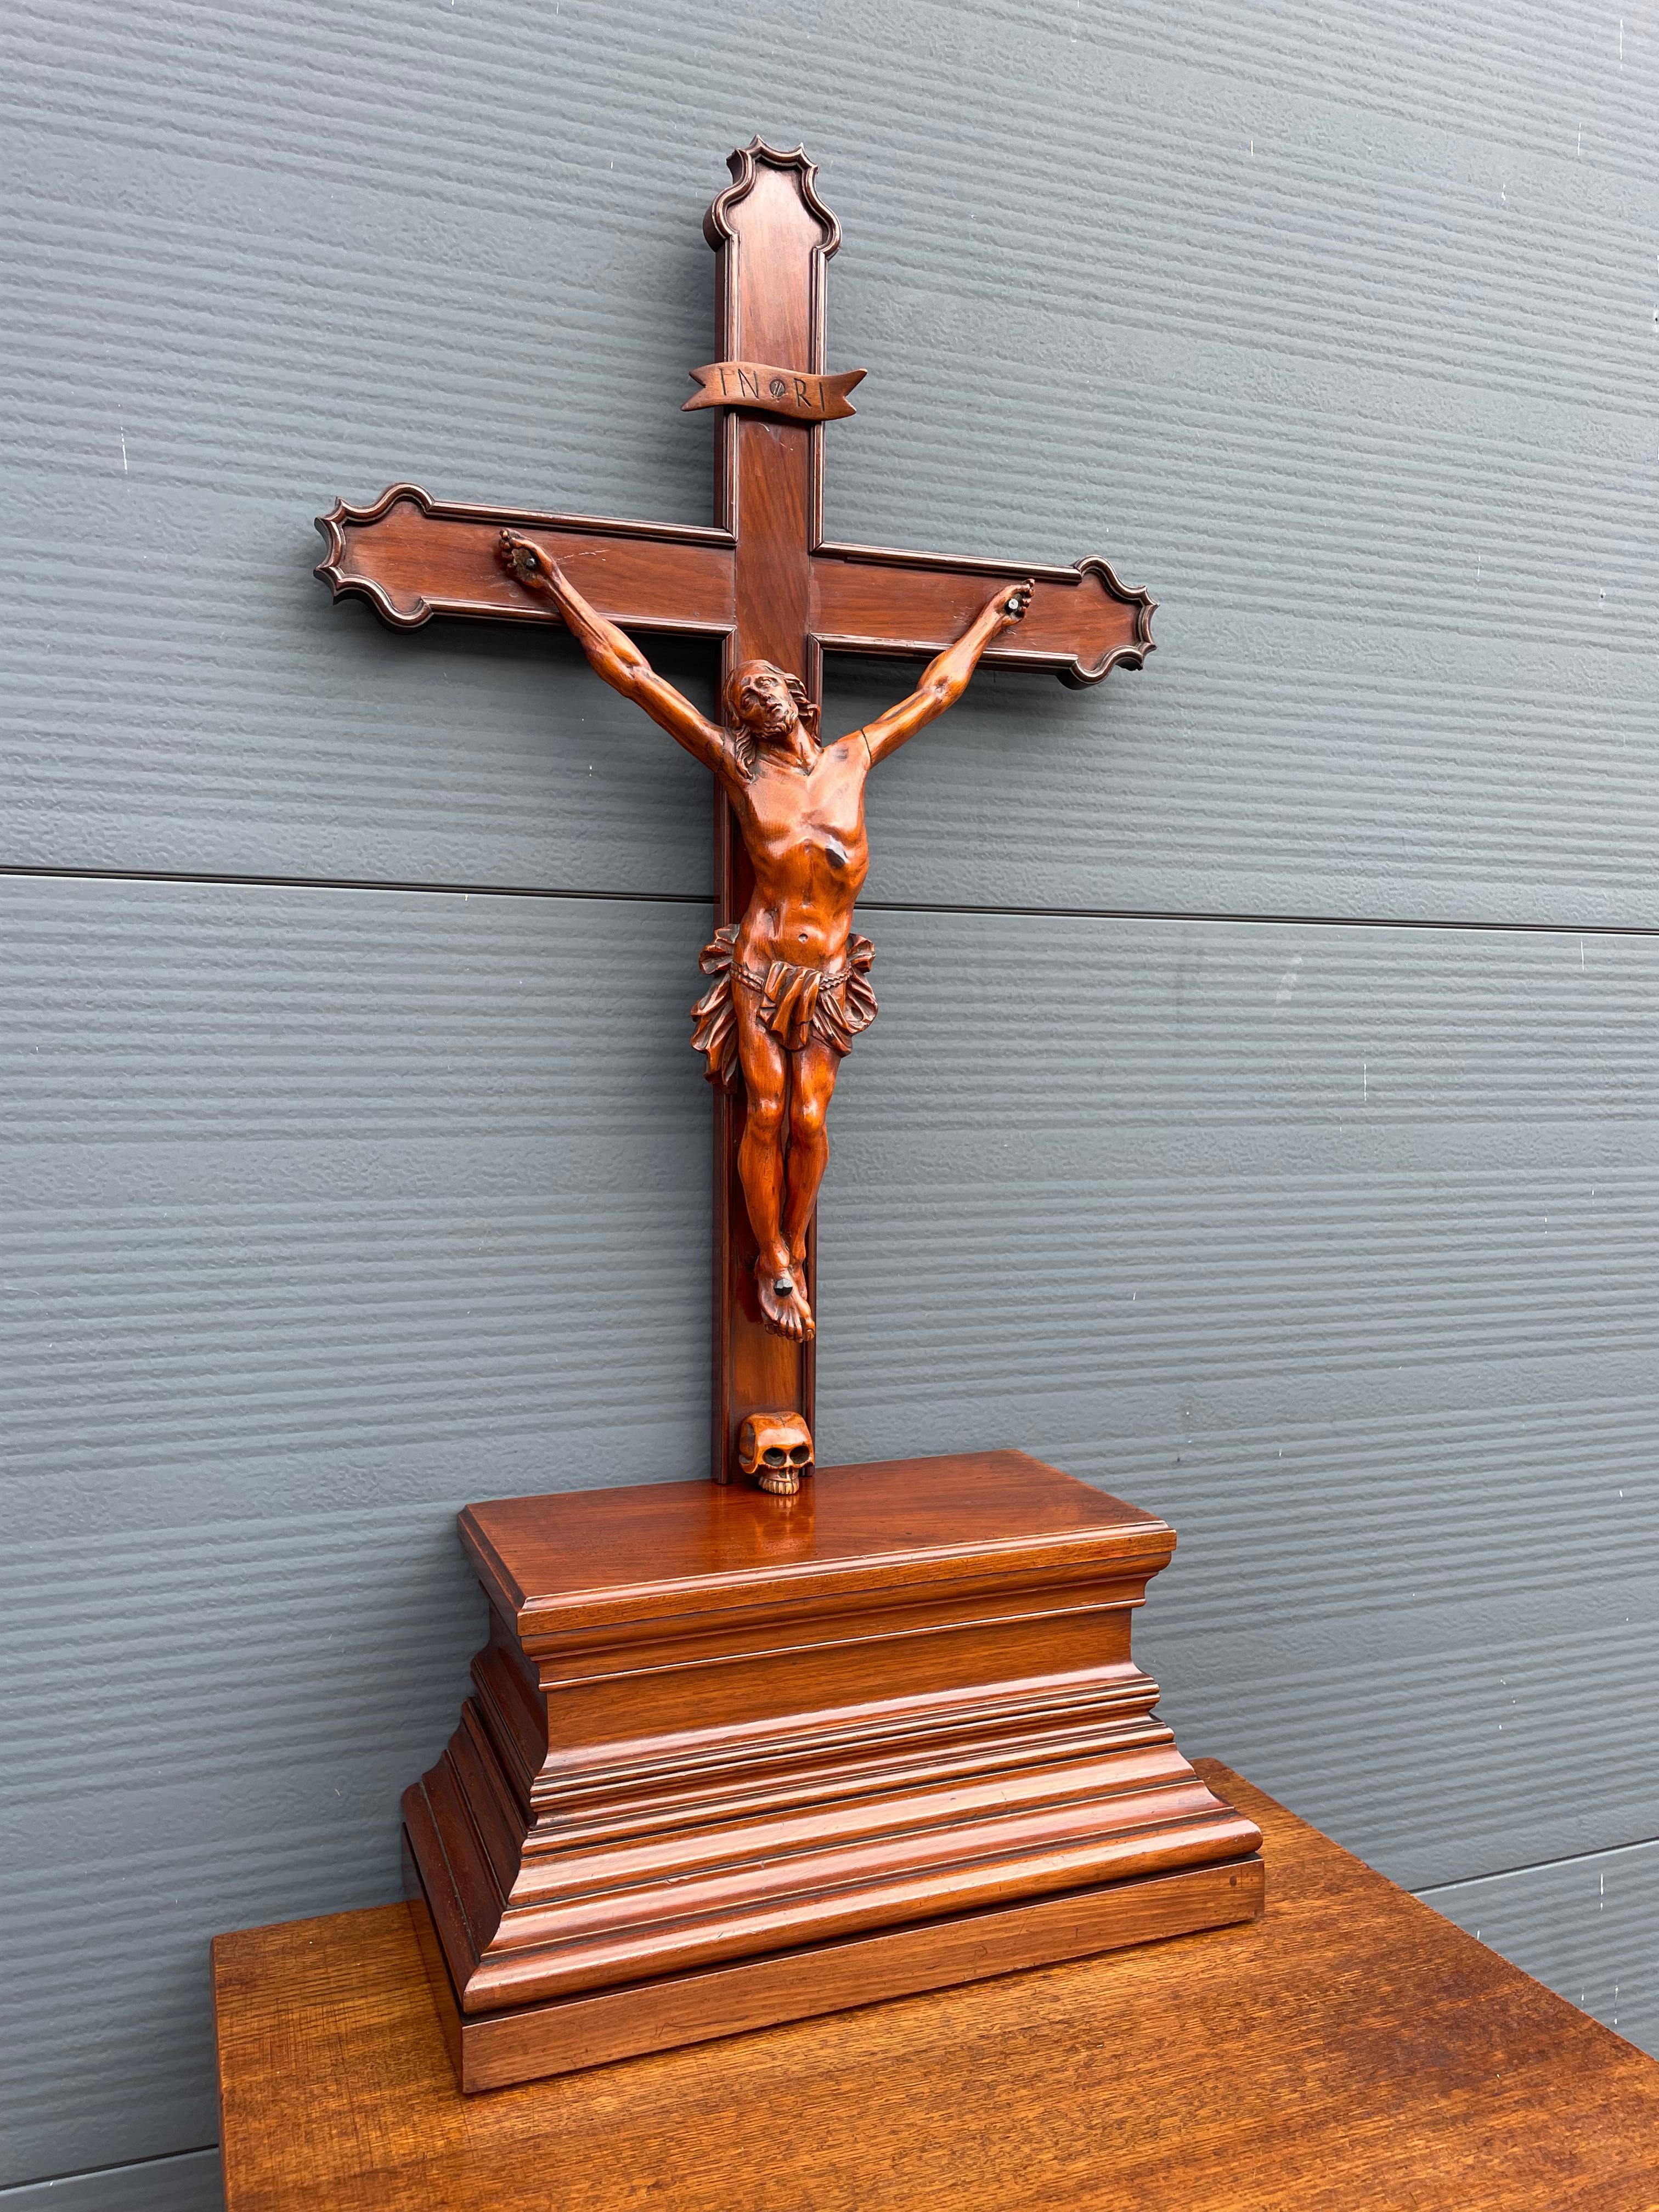 Wunderschönes Altarkruzifix aus dem 19. Jahrhundert mit einem geheimen Bibelfach im Sockel.

Im Laufe der Jahrzehnte haben wir eine Reihe einzigartiger und sehr gut gearbeiteter Kruzifixe verkauft, aber nie eines mit einer so erstaunlichen Patina